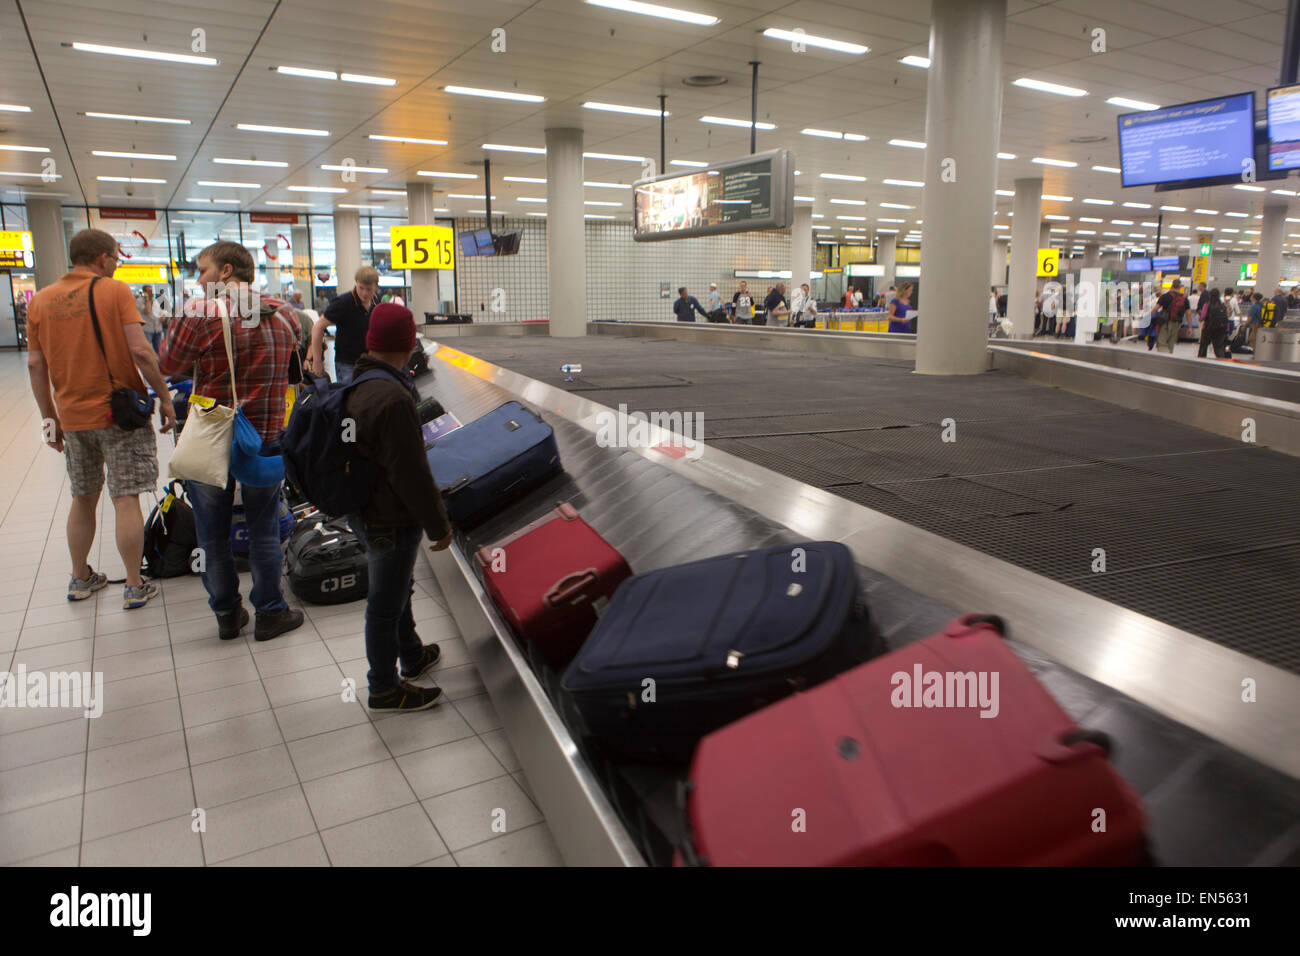 Contrôle des passeports à l'aéroport de Schiphol Banque D'Images